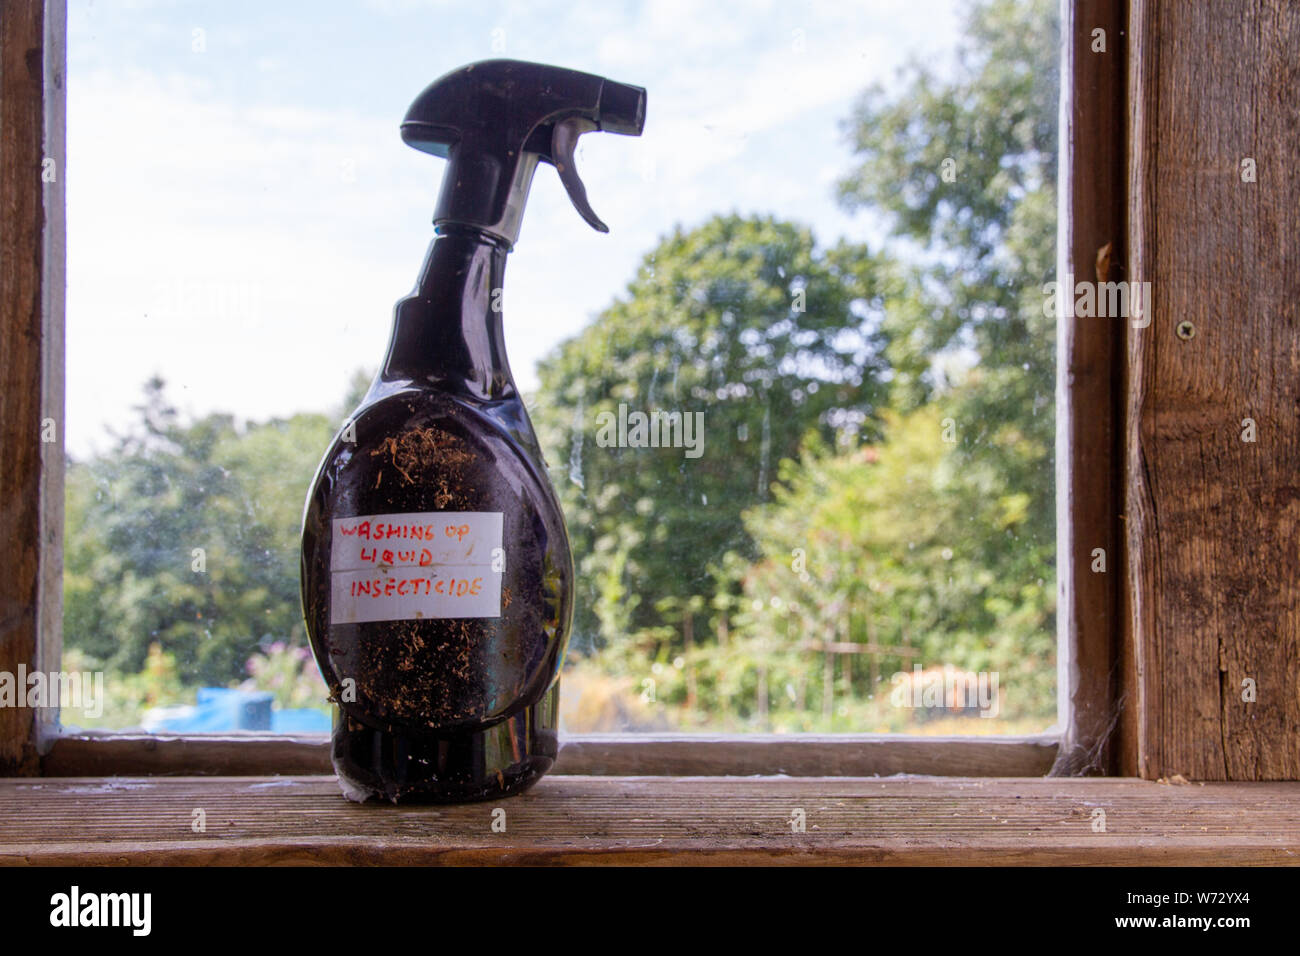 Un viejo frasco pulverizador de plástico se encuentra en la repisa de la ventana de una barraca del jardín, con etiqueta manuscrita "detergente insecticida' atascado en ti Foto de stock